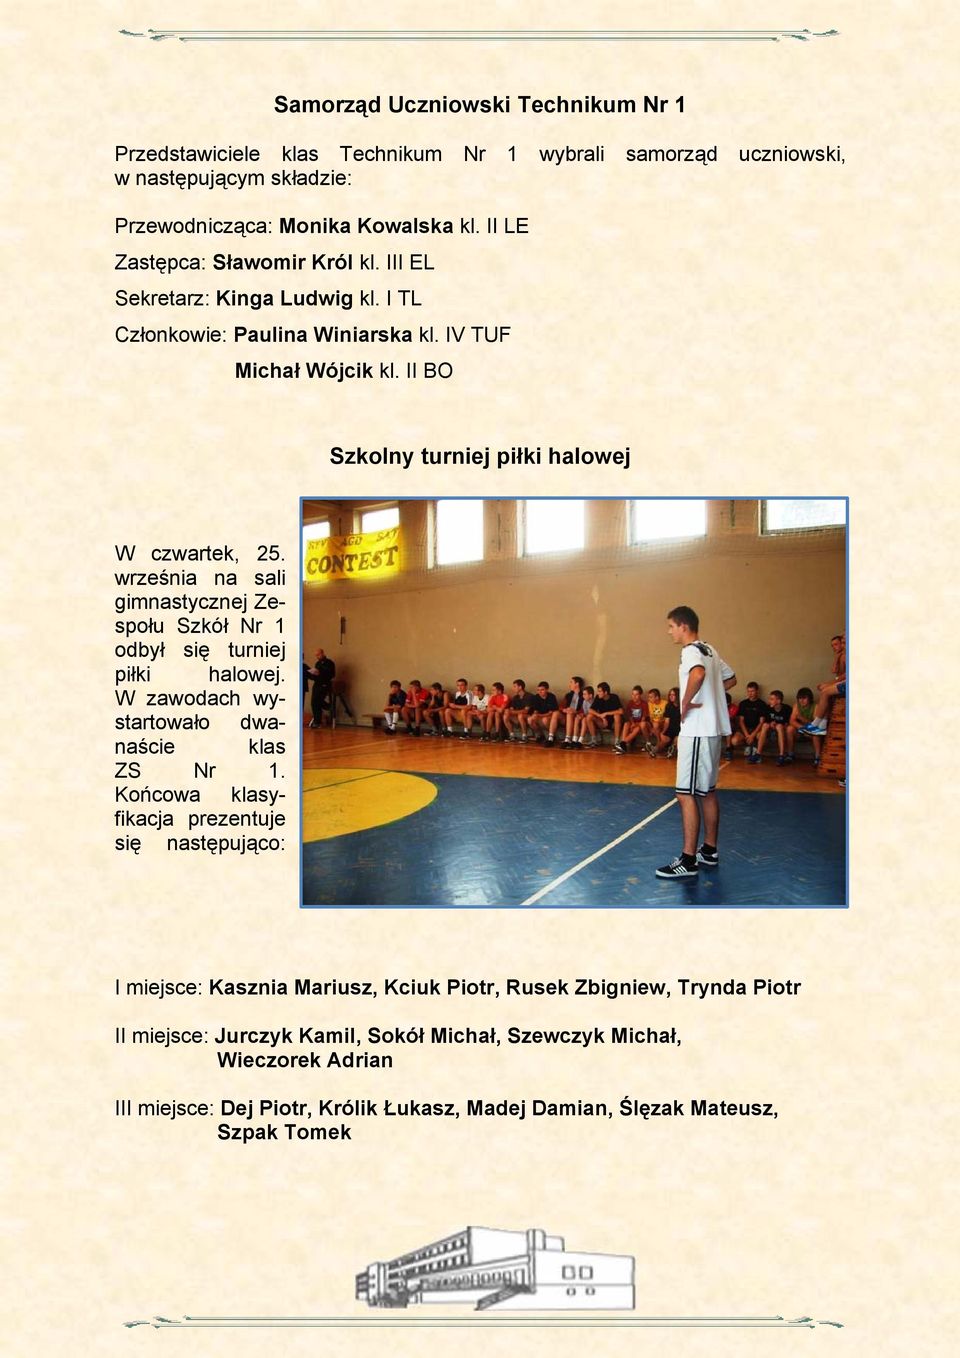 września na sali gimnastycznej Zespołu Szkół Nr 1 odbył się turniej piłki halowej. W zawodach wystartowało dwanaście klas ZS Nr 1.